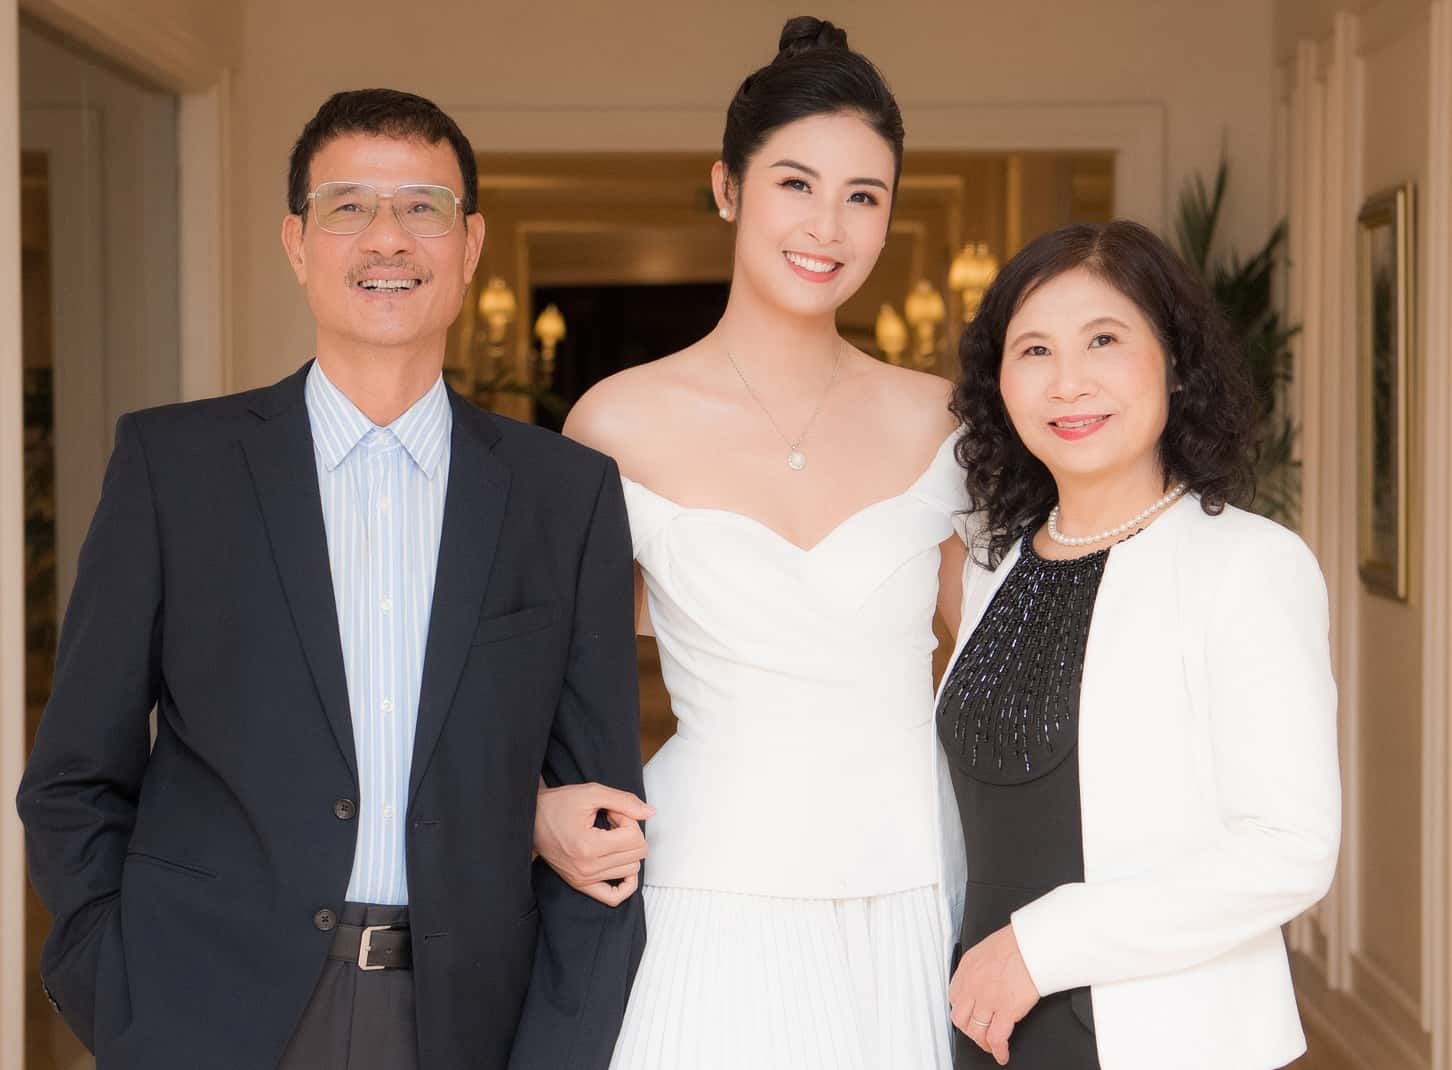 Hoa hậu Ngọc Hân tặng bố mẹ món quà gần 200 triệu